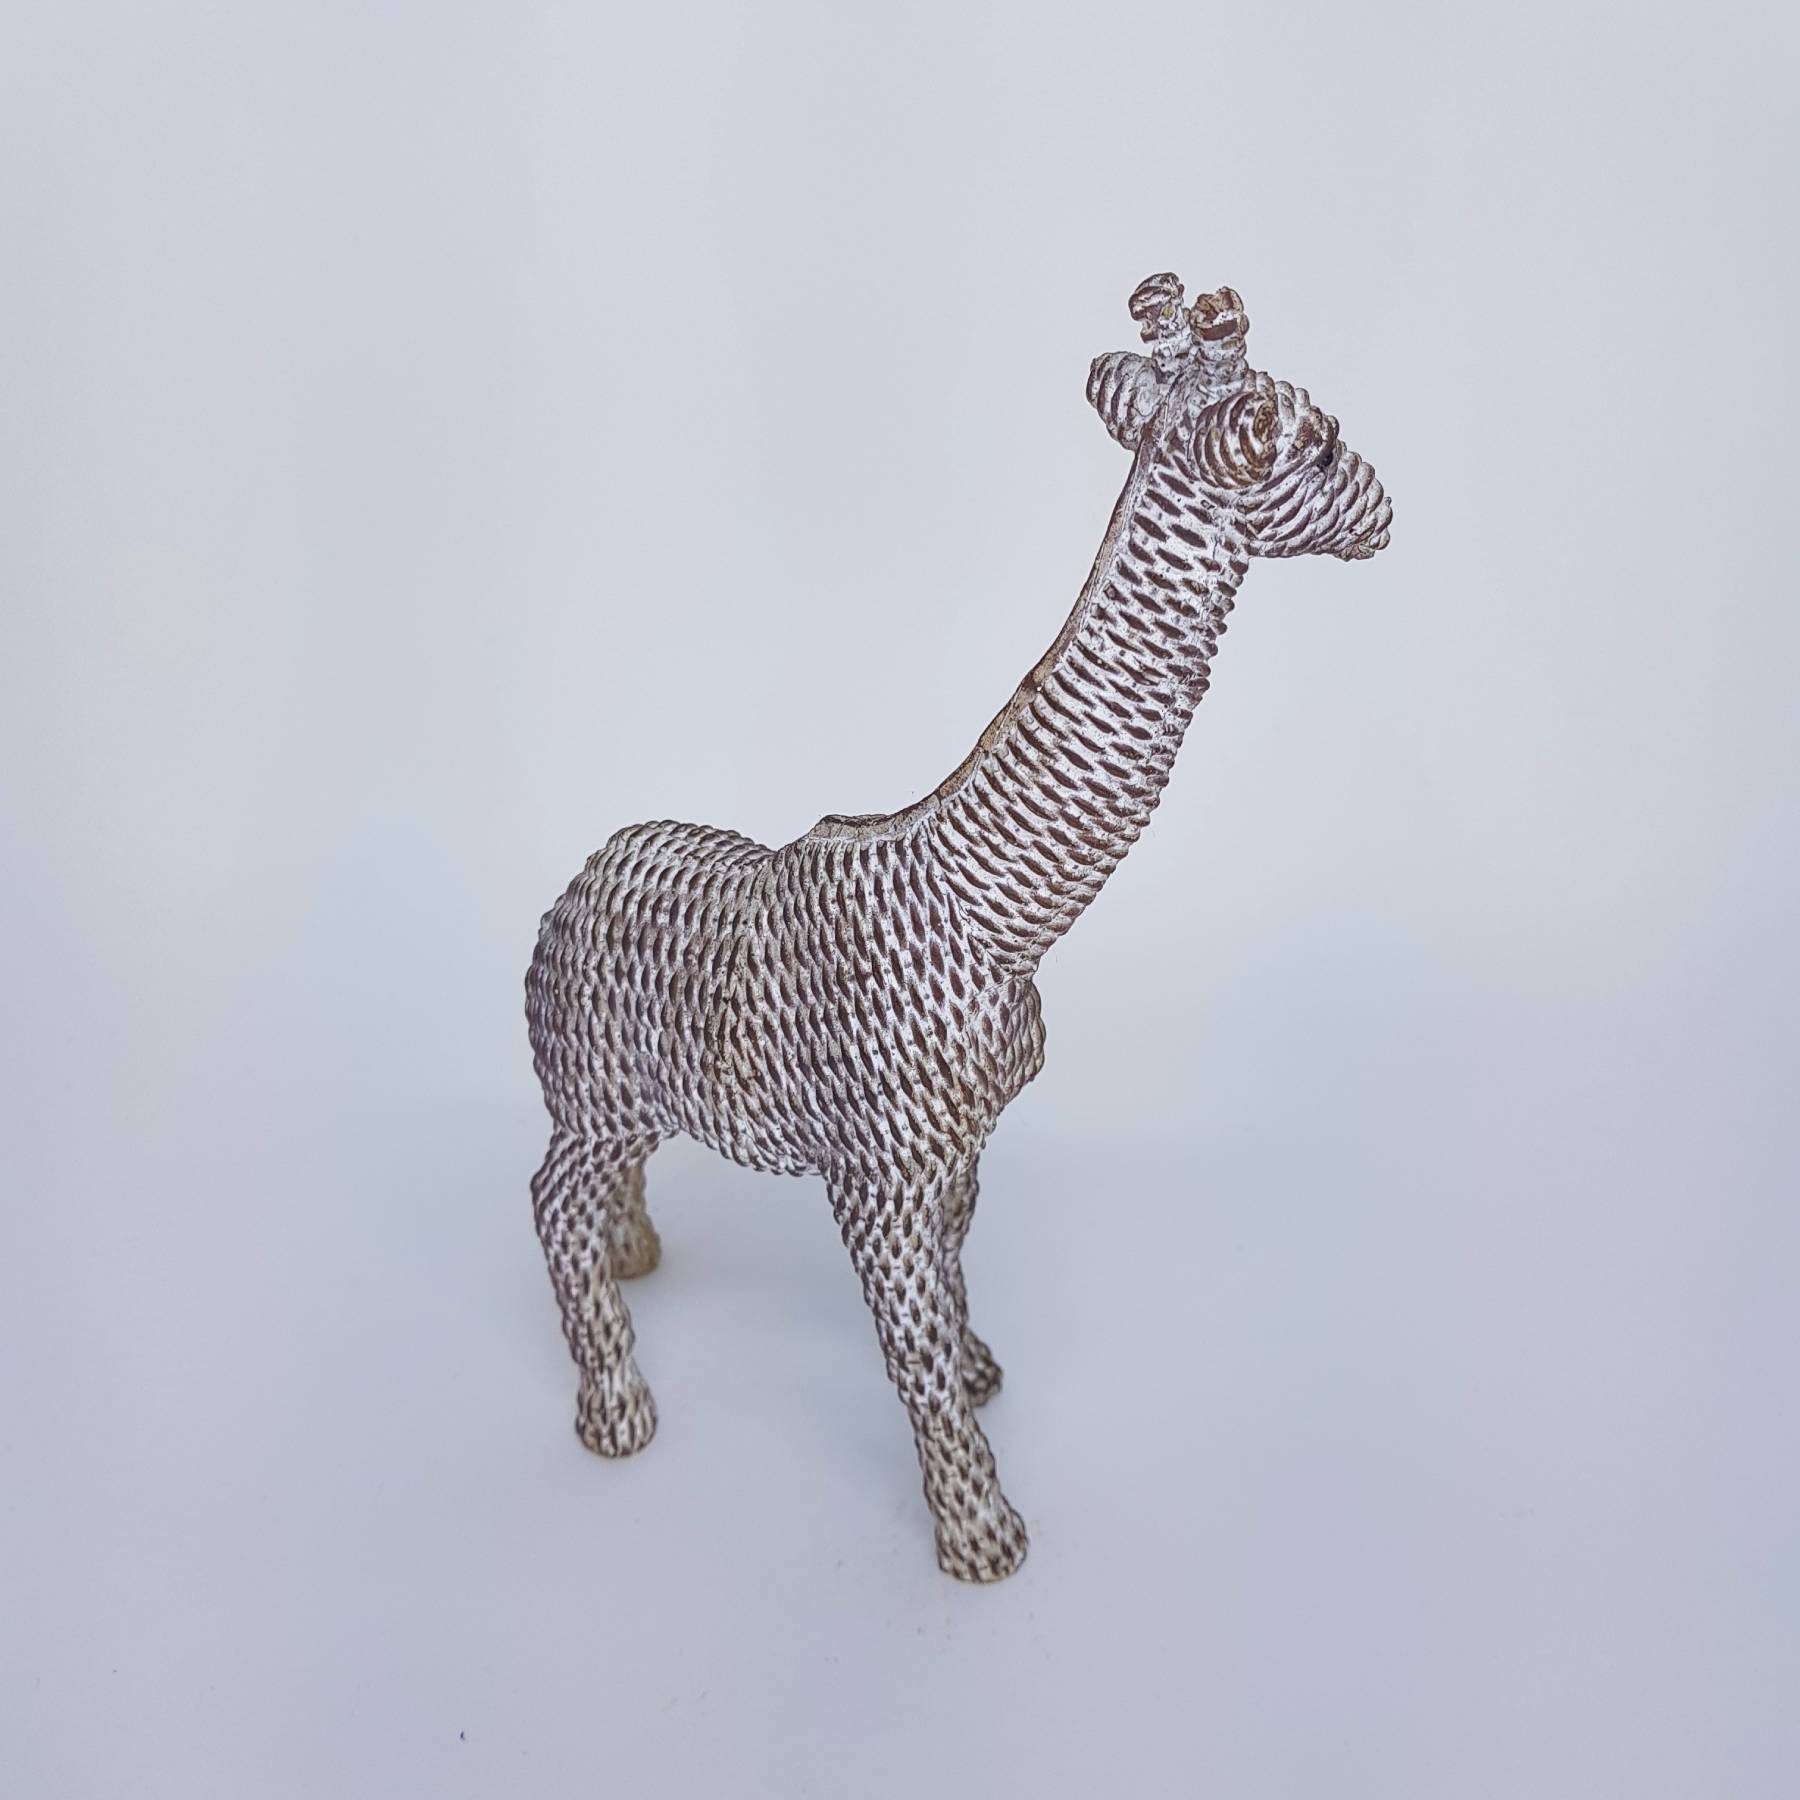 Girafa filhote em resina - 22,5cm